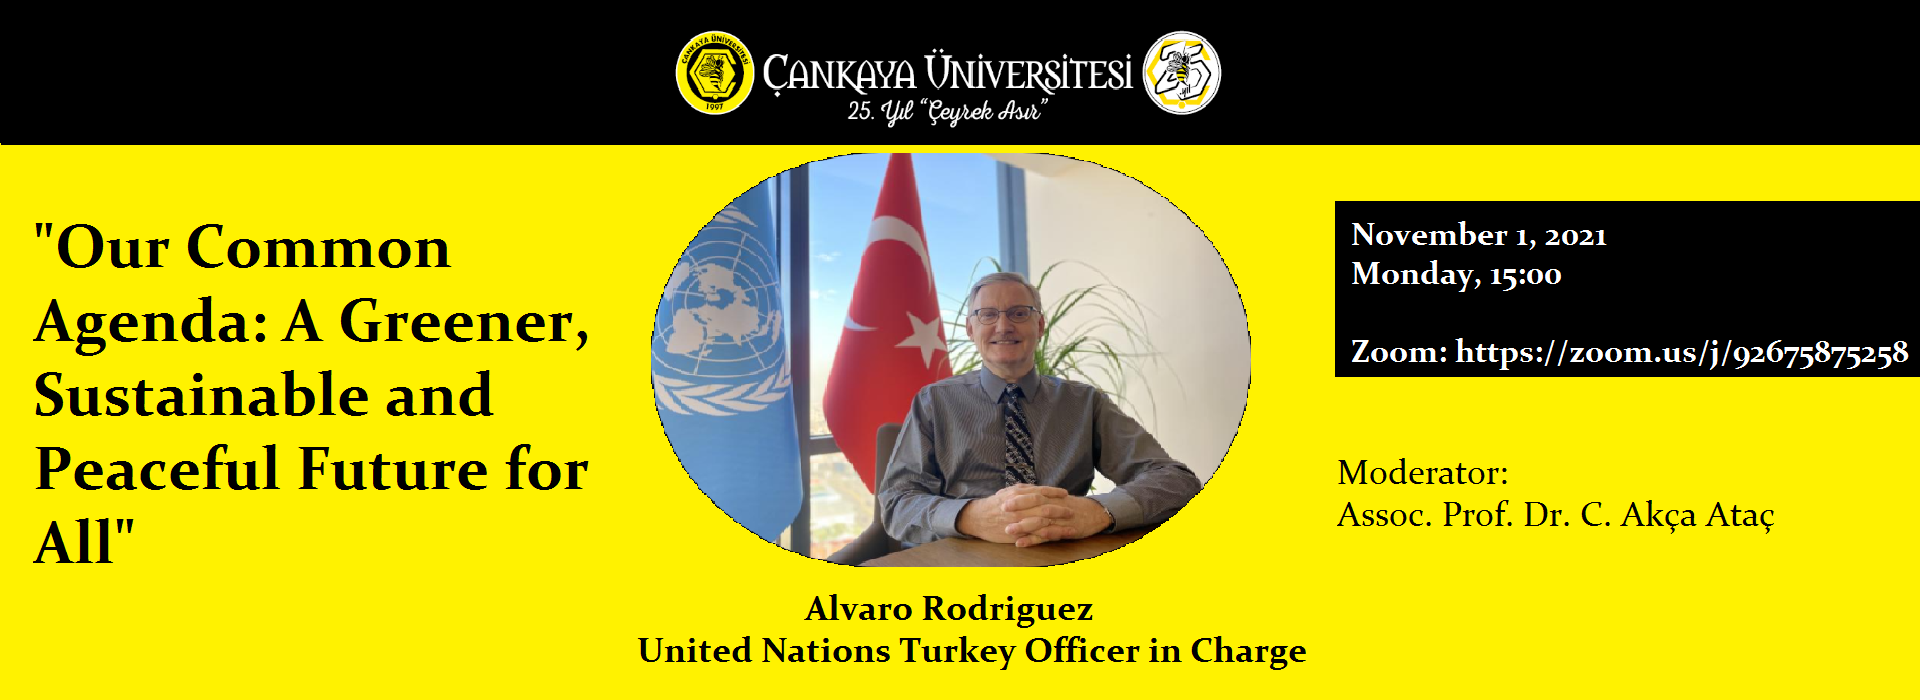 Birleşmiş Milletler Temsilcisi Alvaro Rodriguez’in Katılımıyla Online Konferans